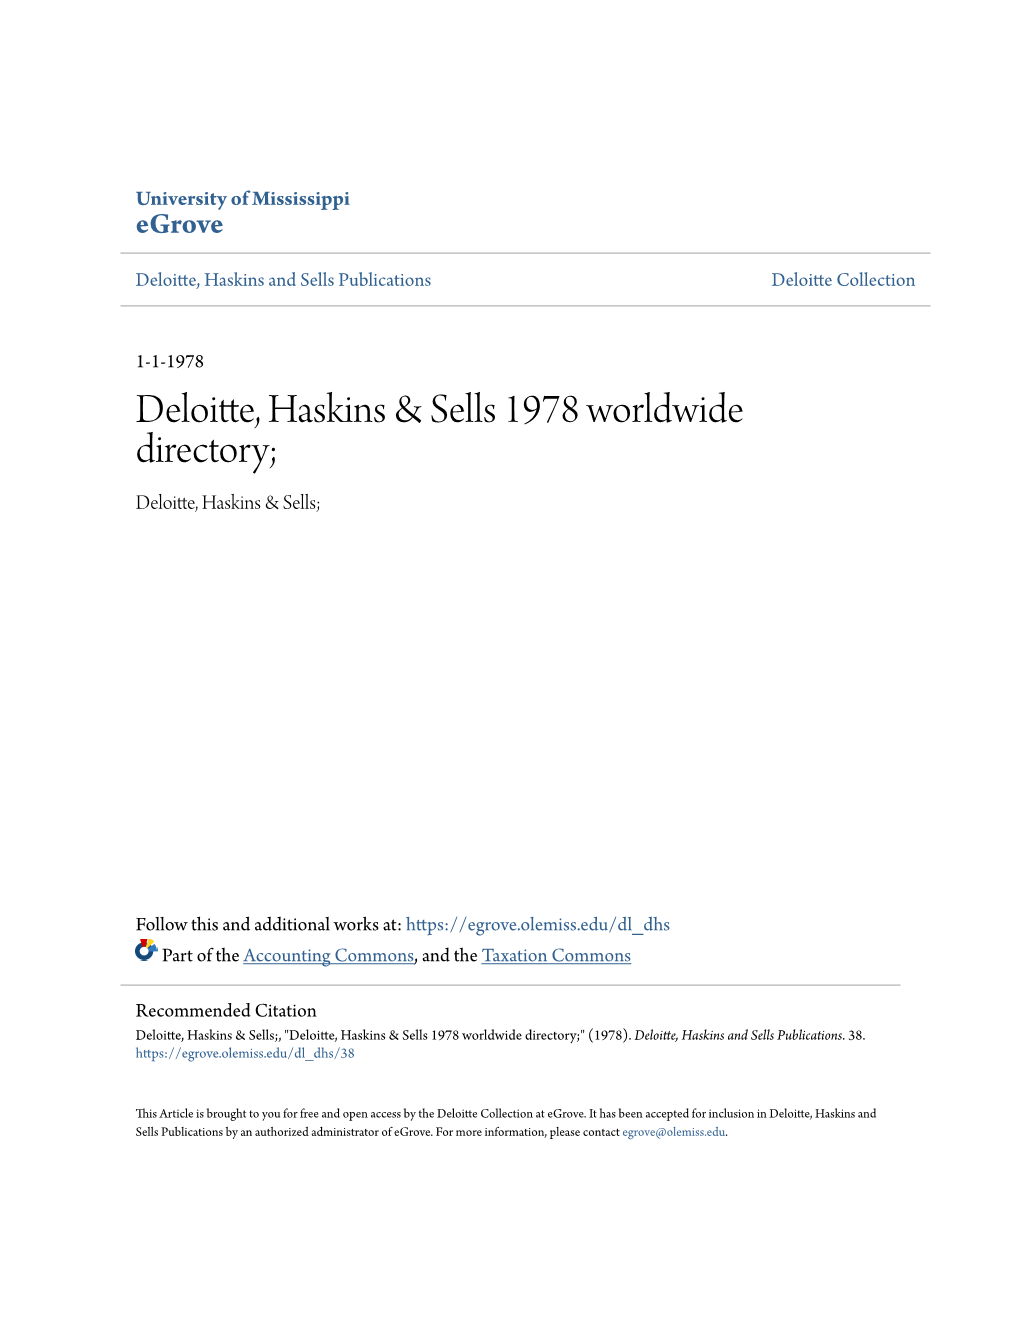 Deloitte, Haskins & Sells 1978 Worldwide Directory;